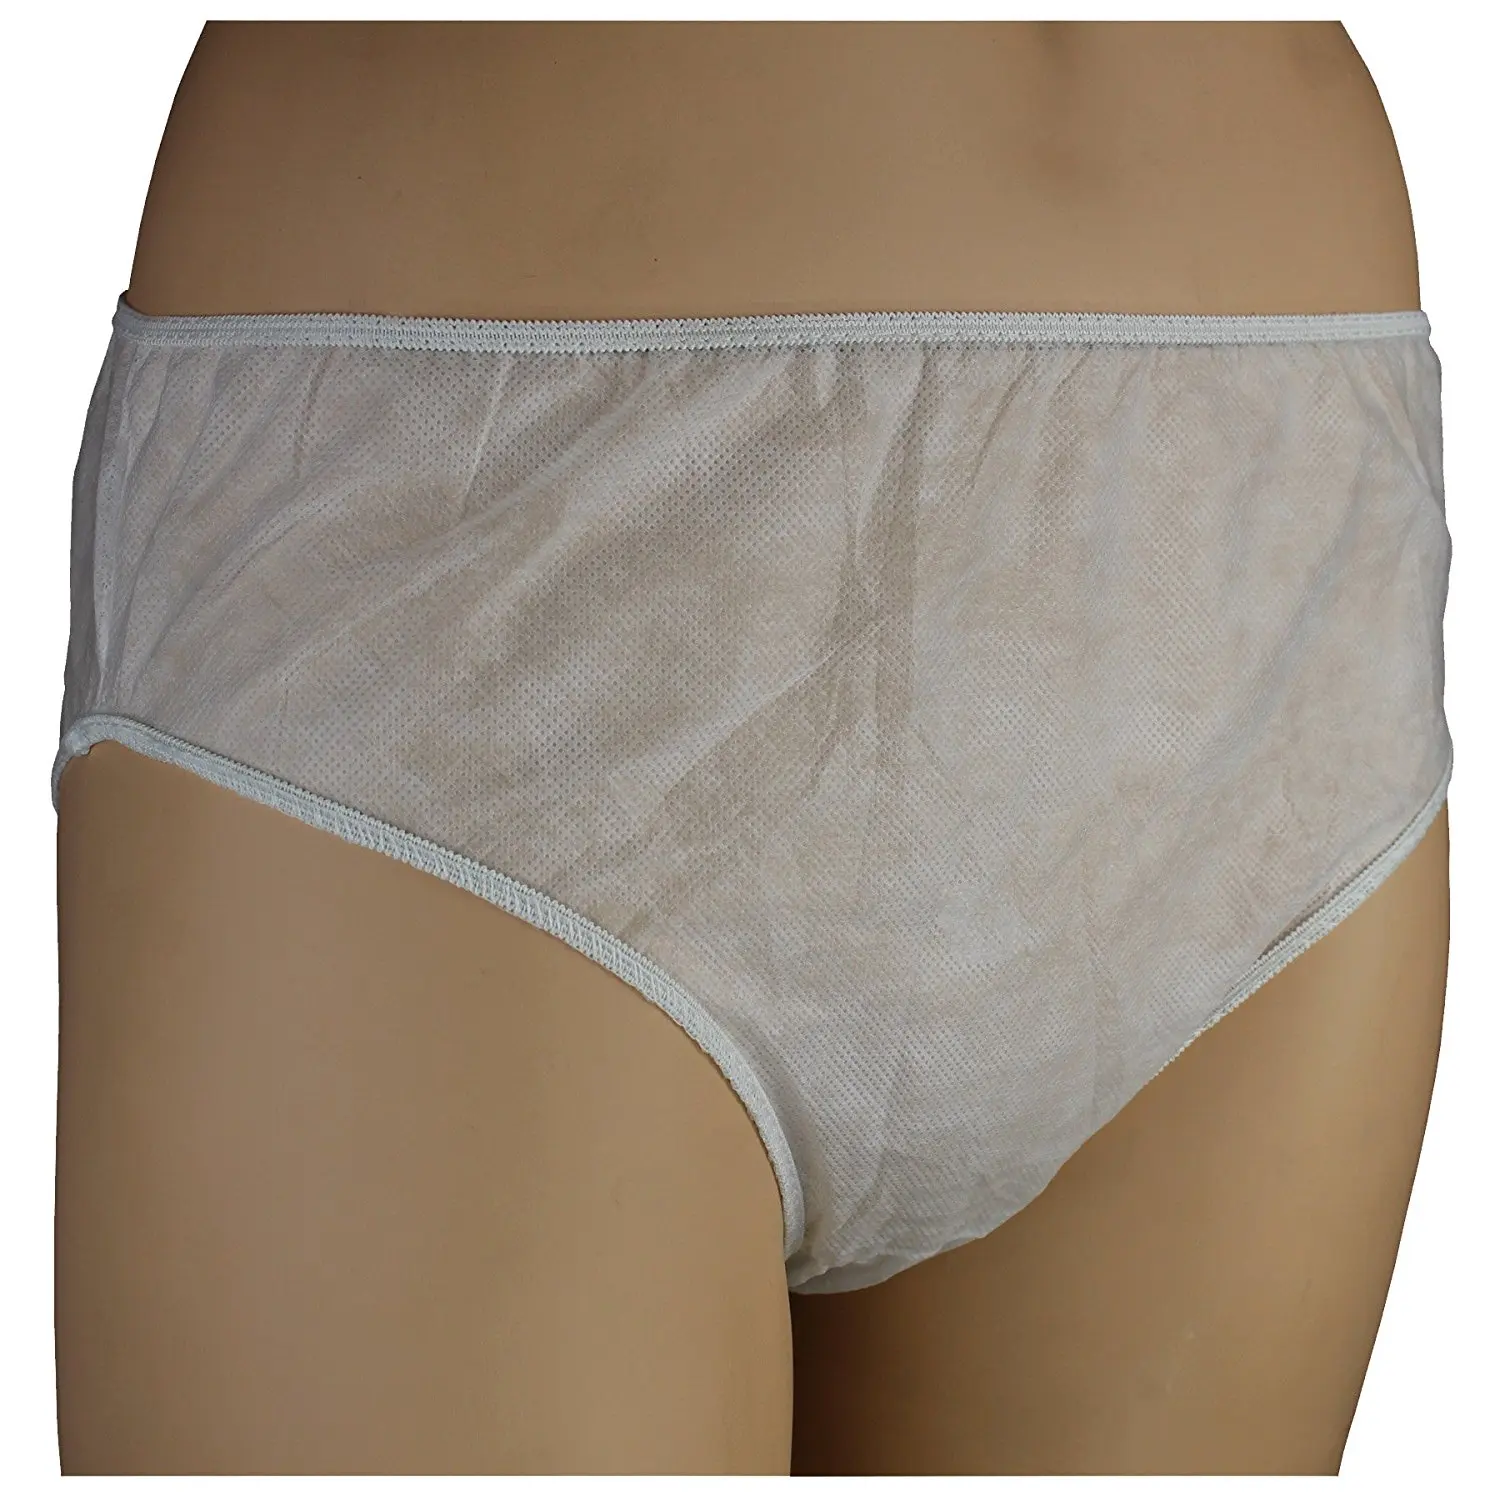 For dirty sale underwear Used panties